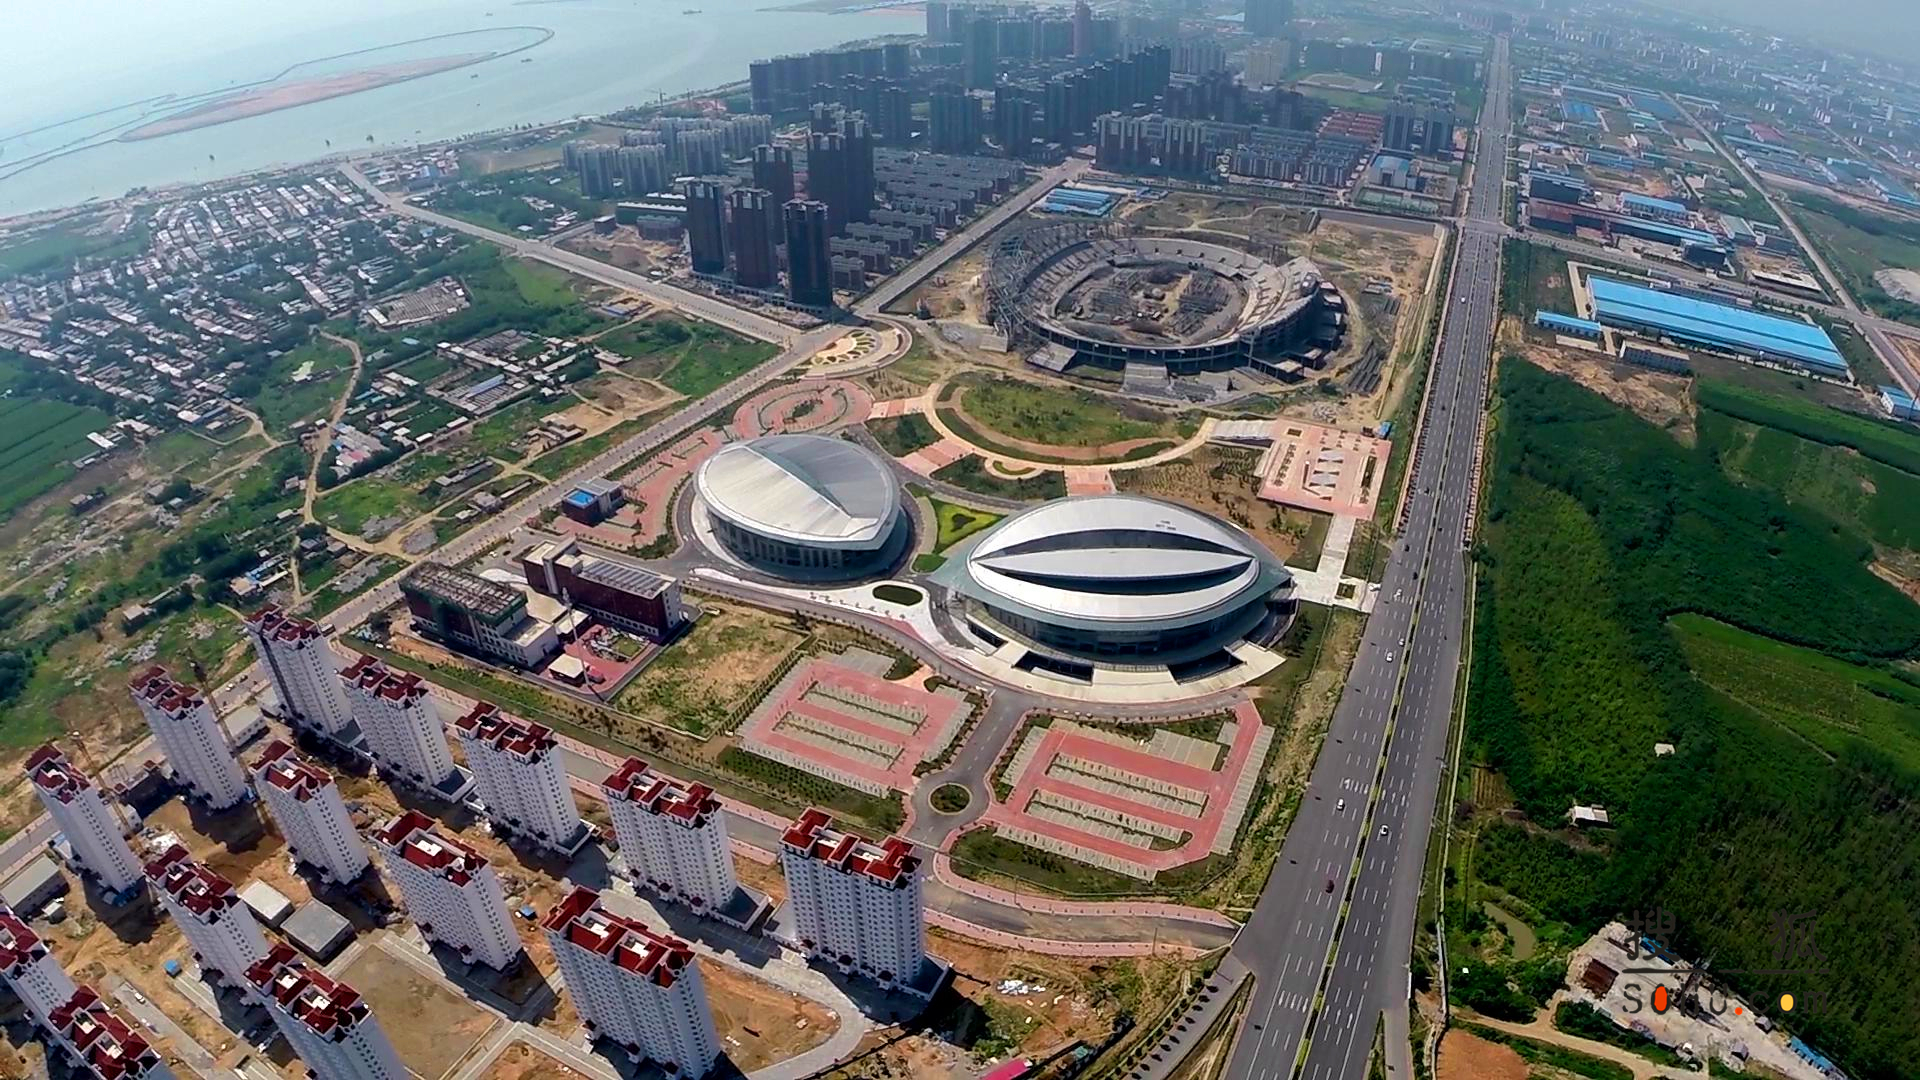 正文 锦州滨海体育中心位于锦州滨海新区渤海大道25公里处,是锦州市